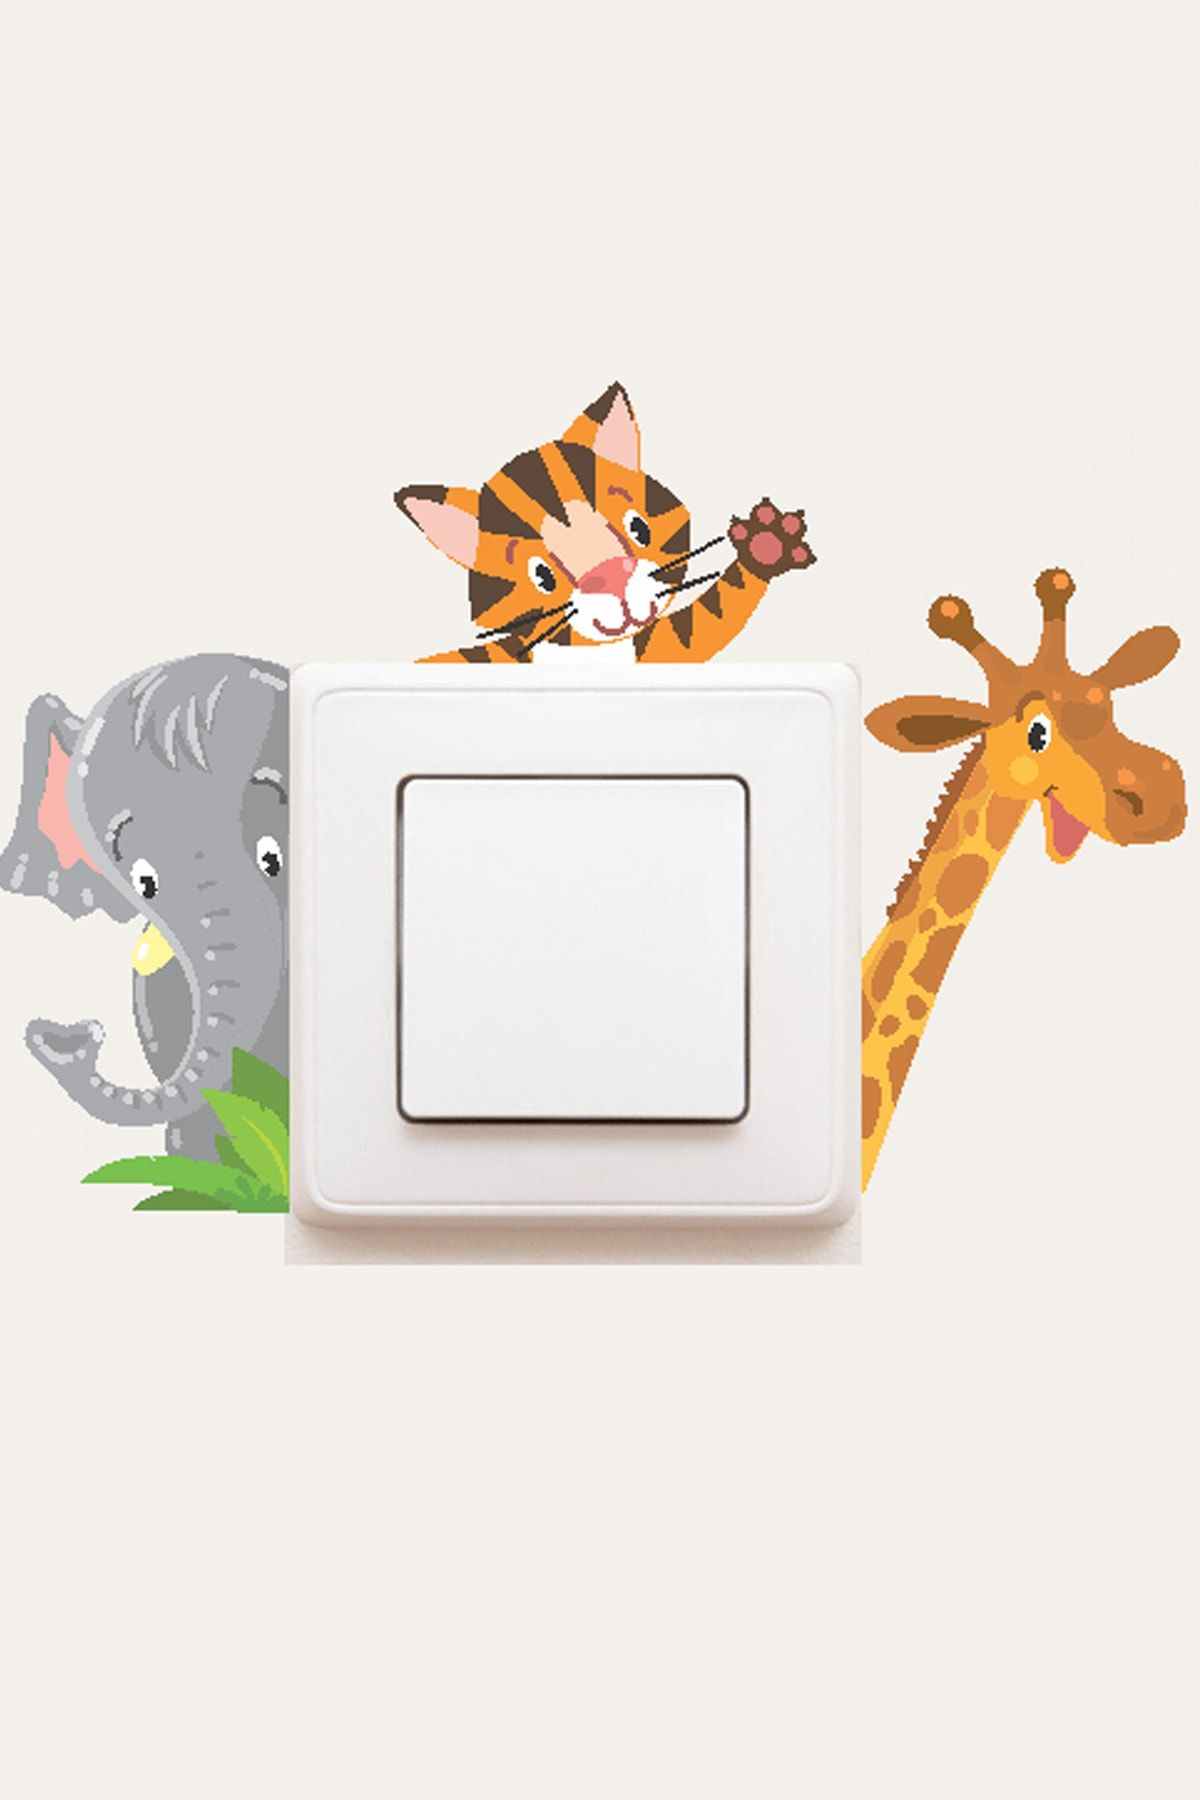 MSticker Sevimli Priz Sticker - Safari Hayvanları